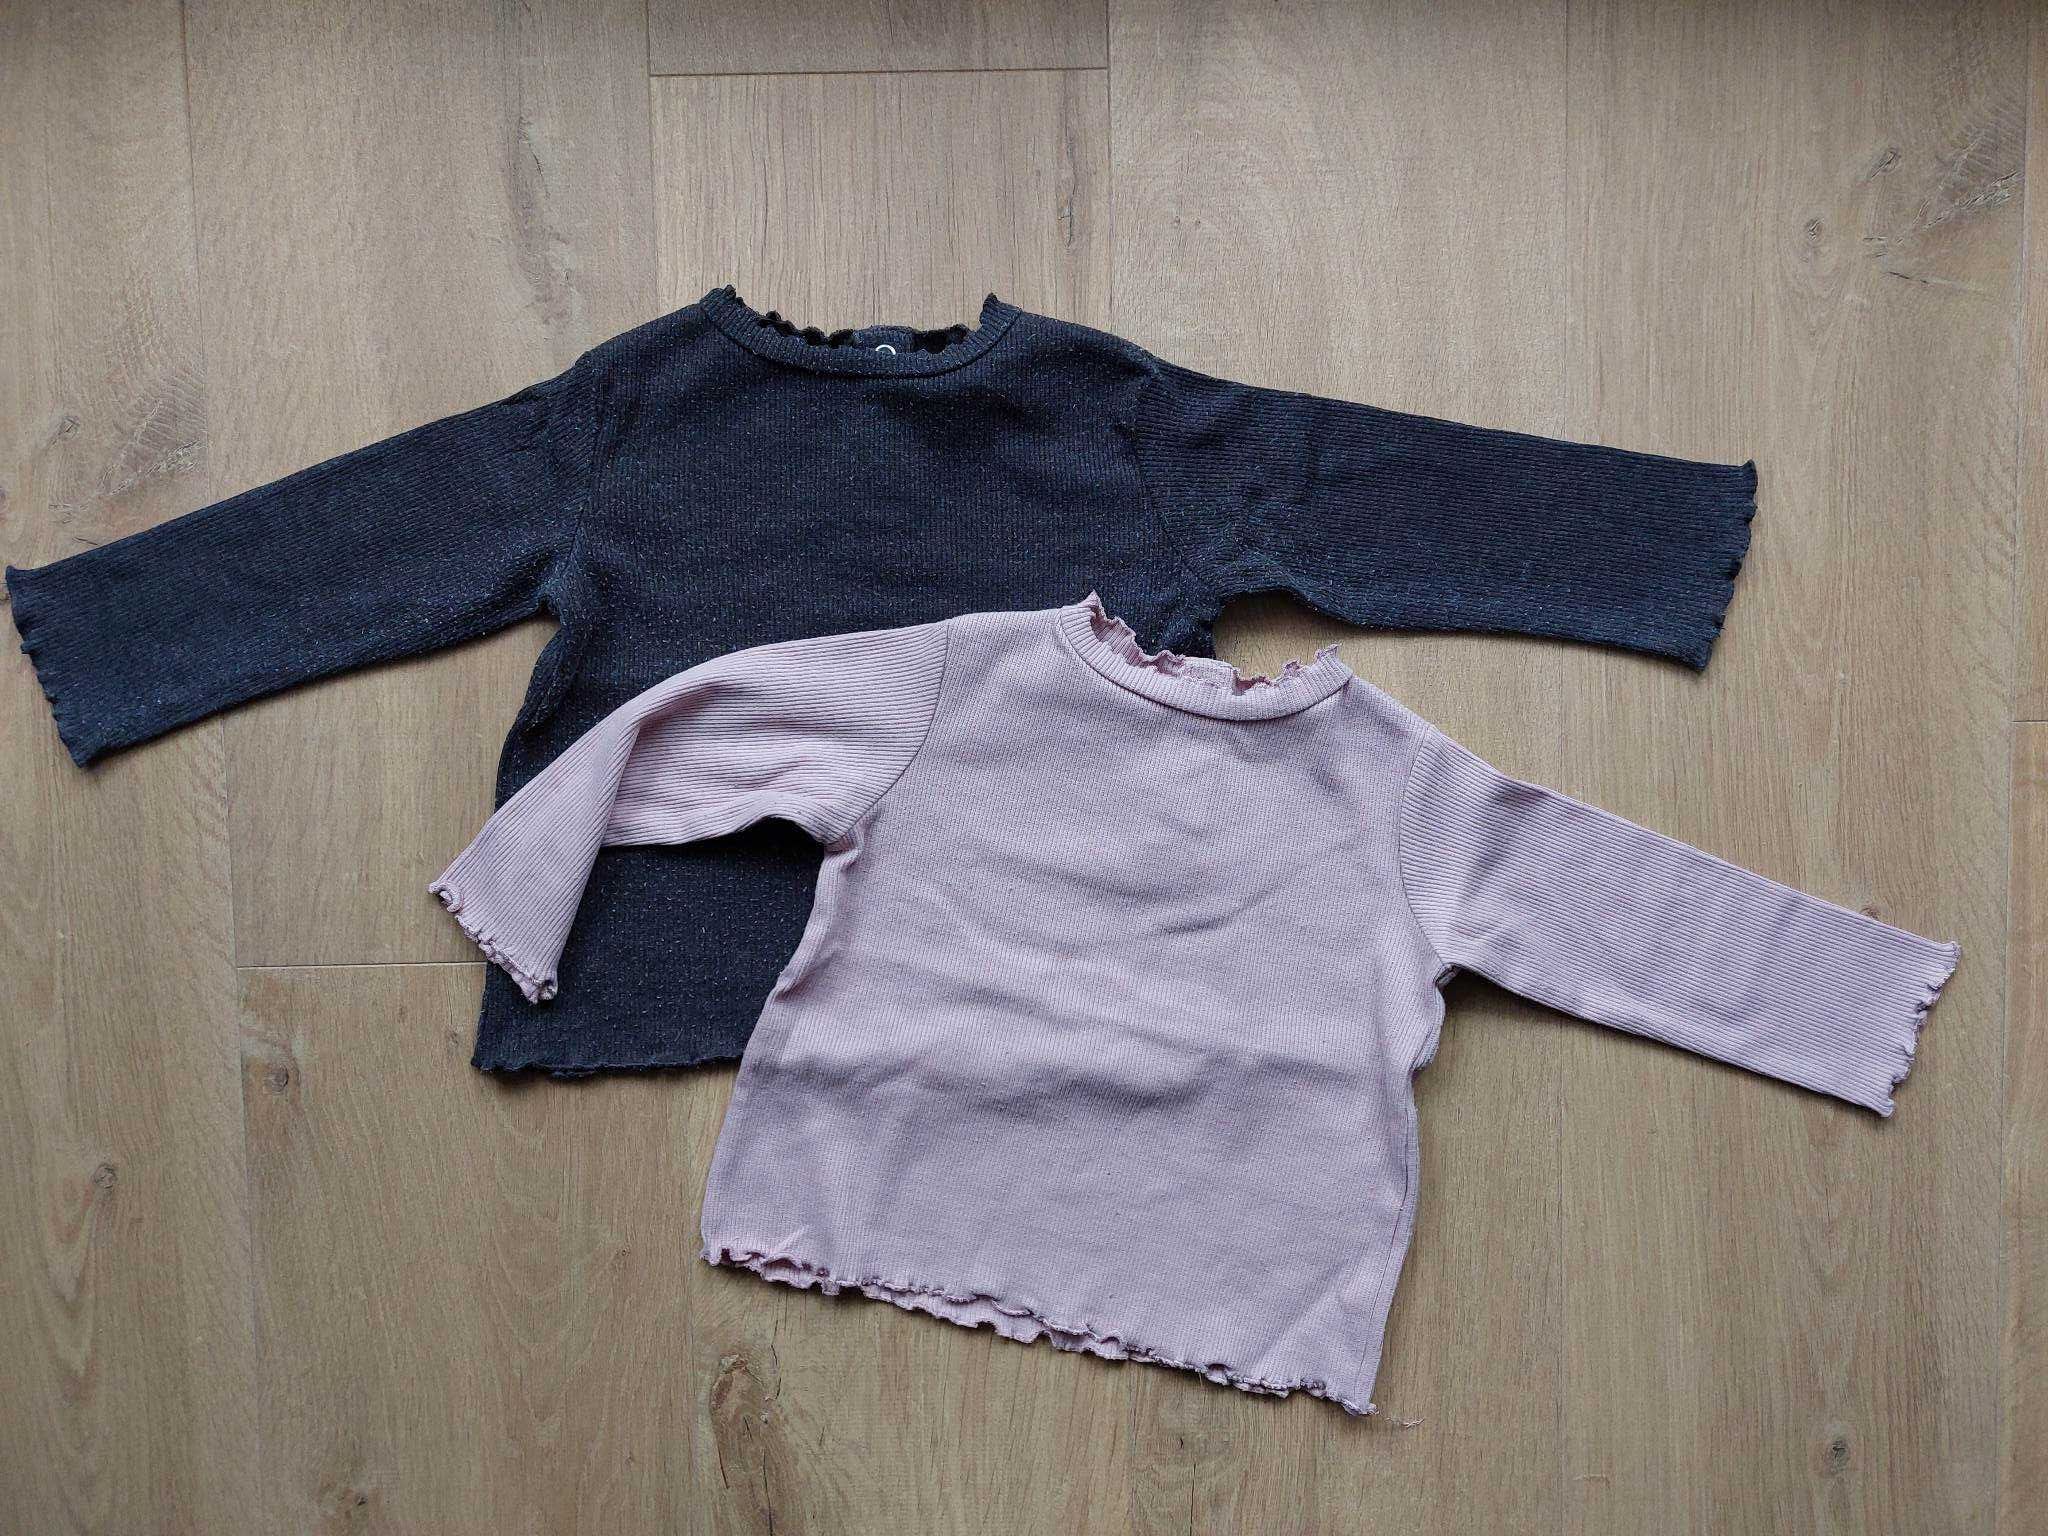 Koszulka Zara, grafitowa i różowa, rozmiar 80, 2 szt.